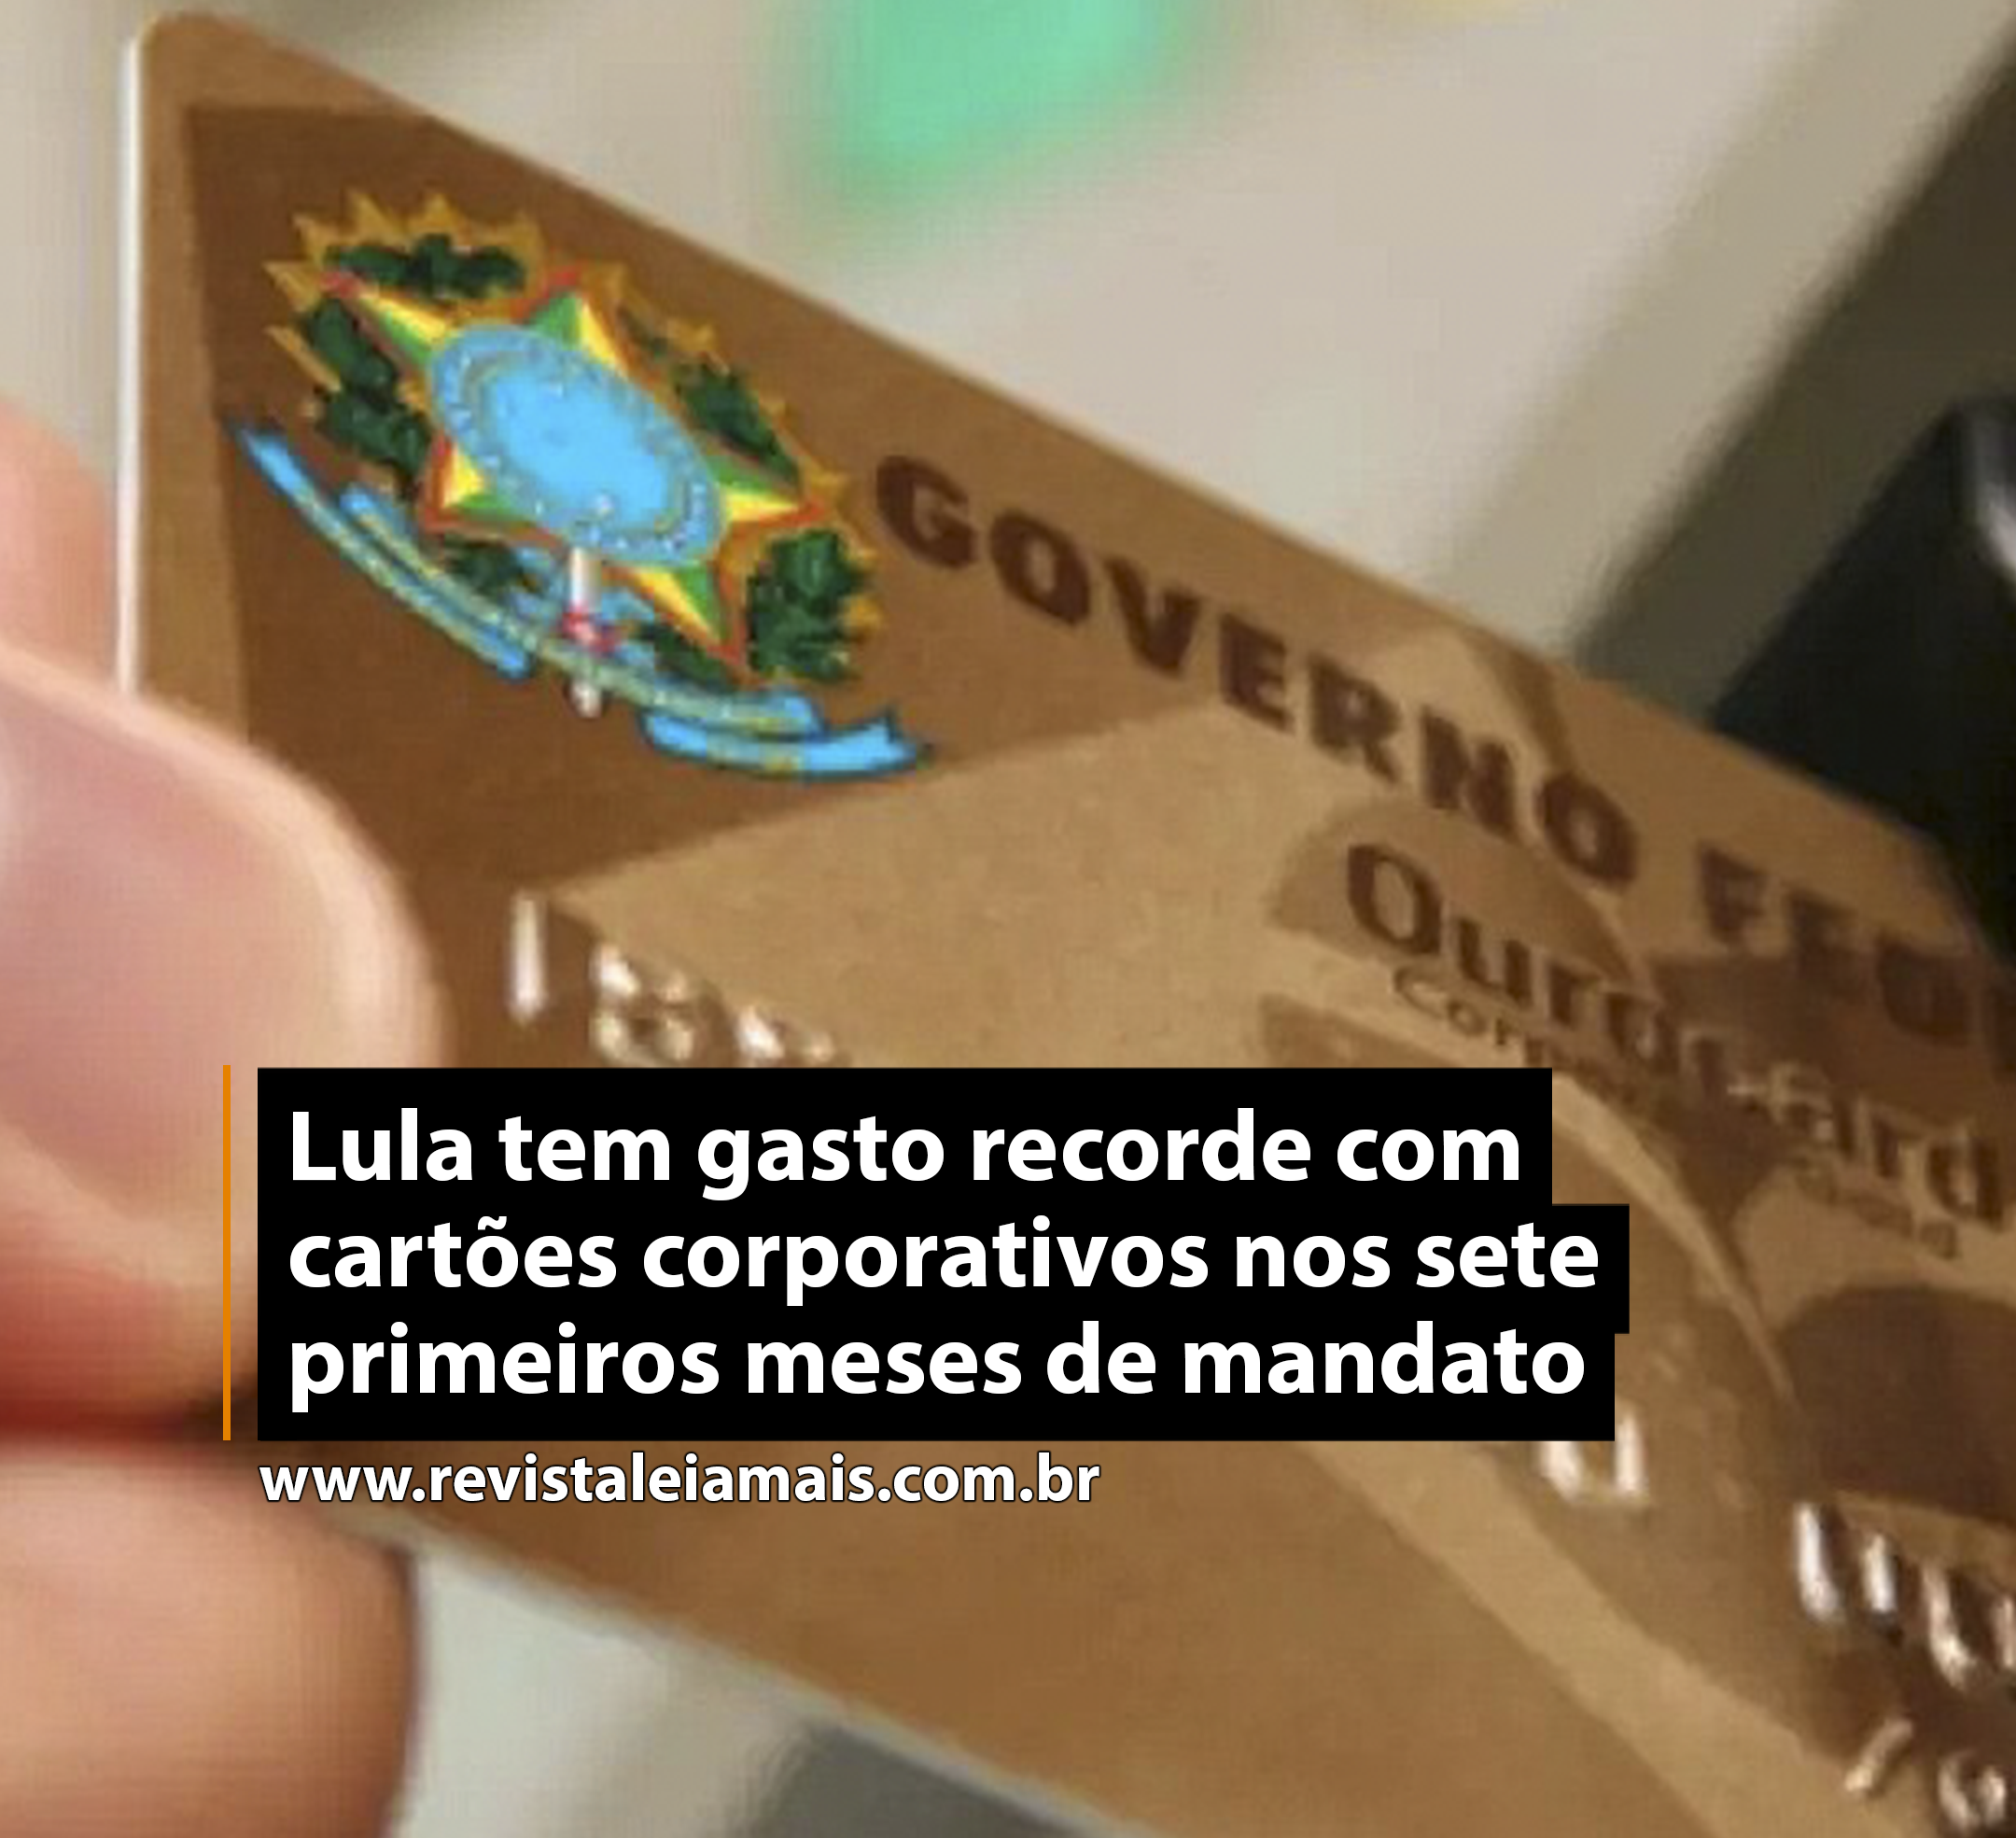 Lula tem gasto recorde com cartões corporativos nos sete primeiros meses de mandato